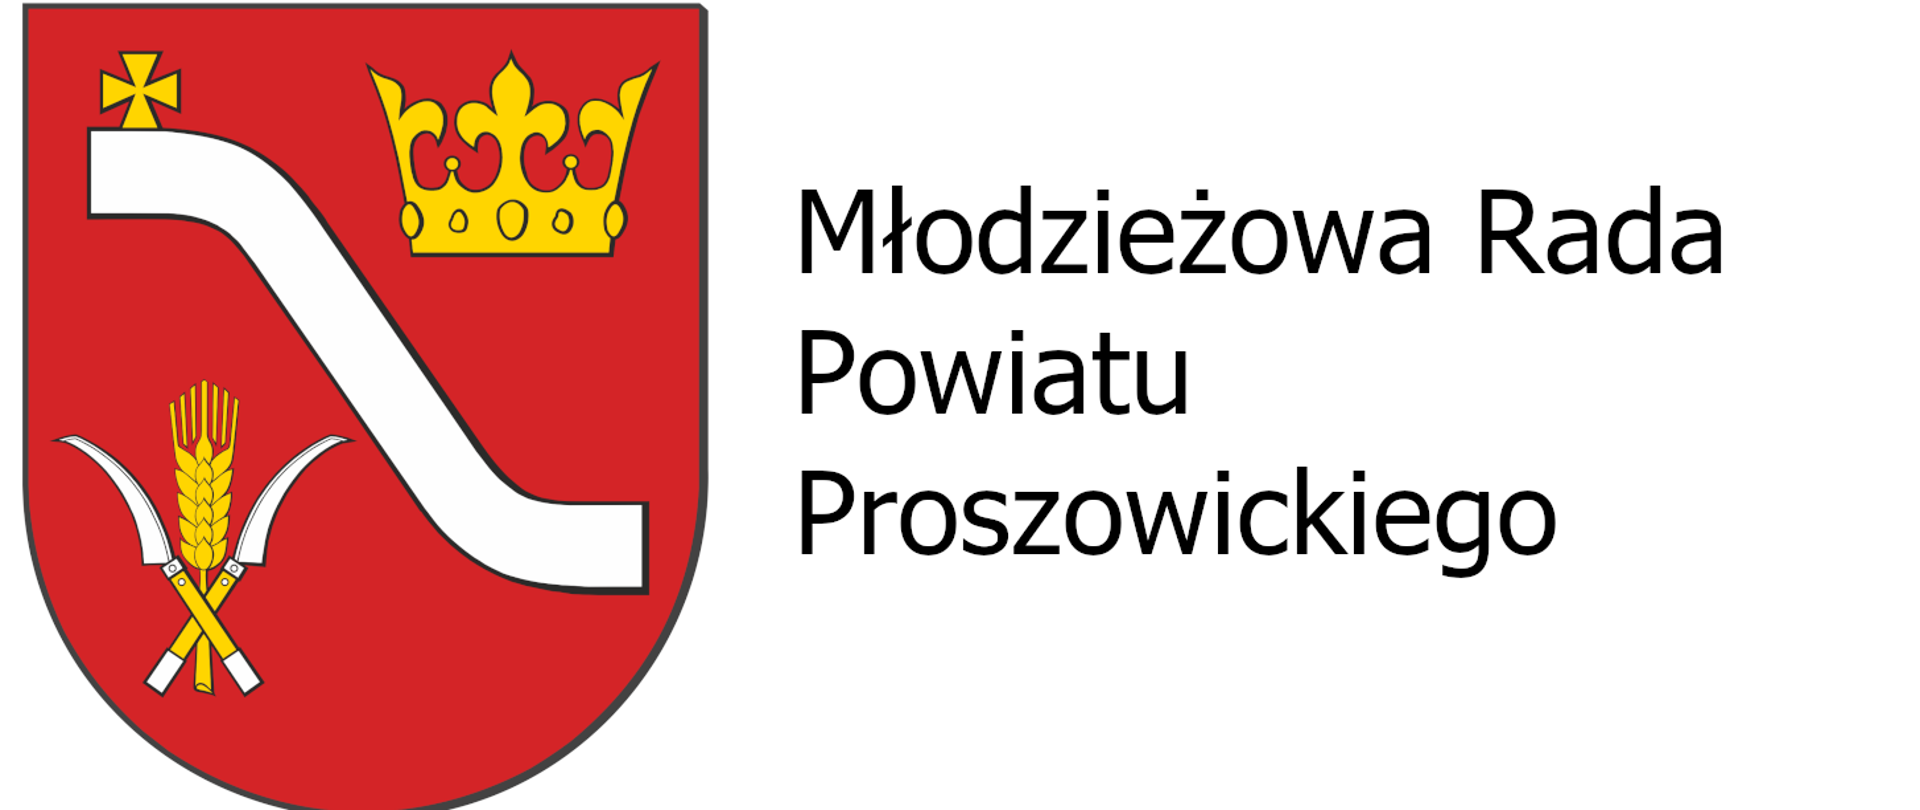 Herb Powiatu Proszowickiego. Po prawej stronie napis "Młodzieżowa Rada Powiatu Proszowickiego"